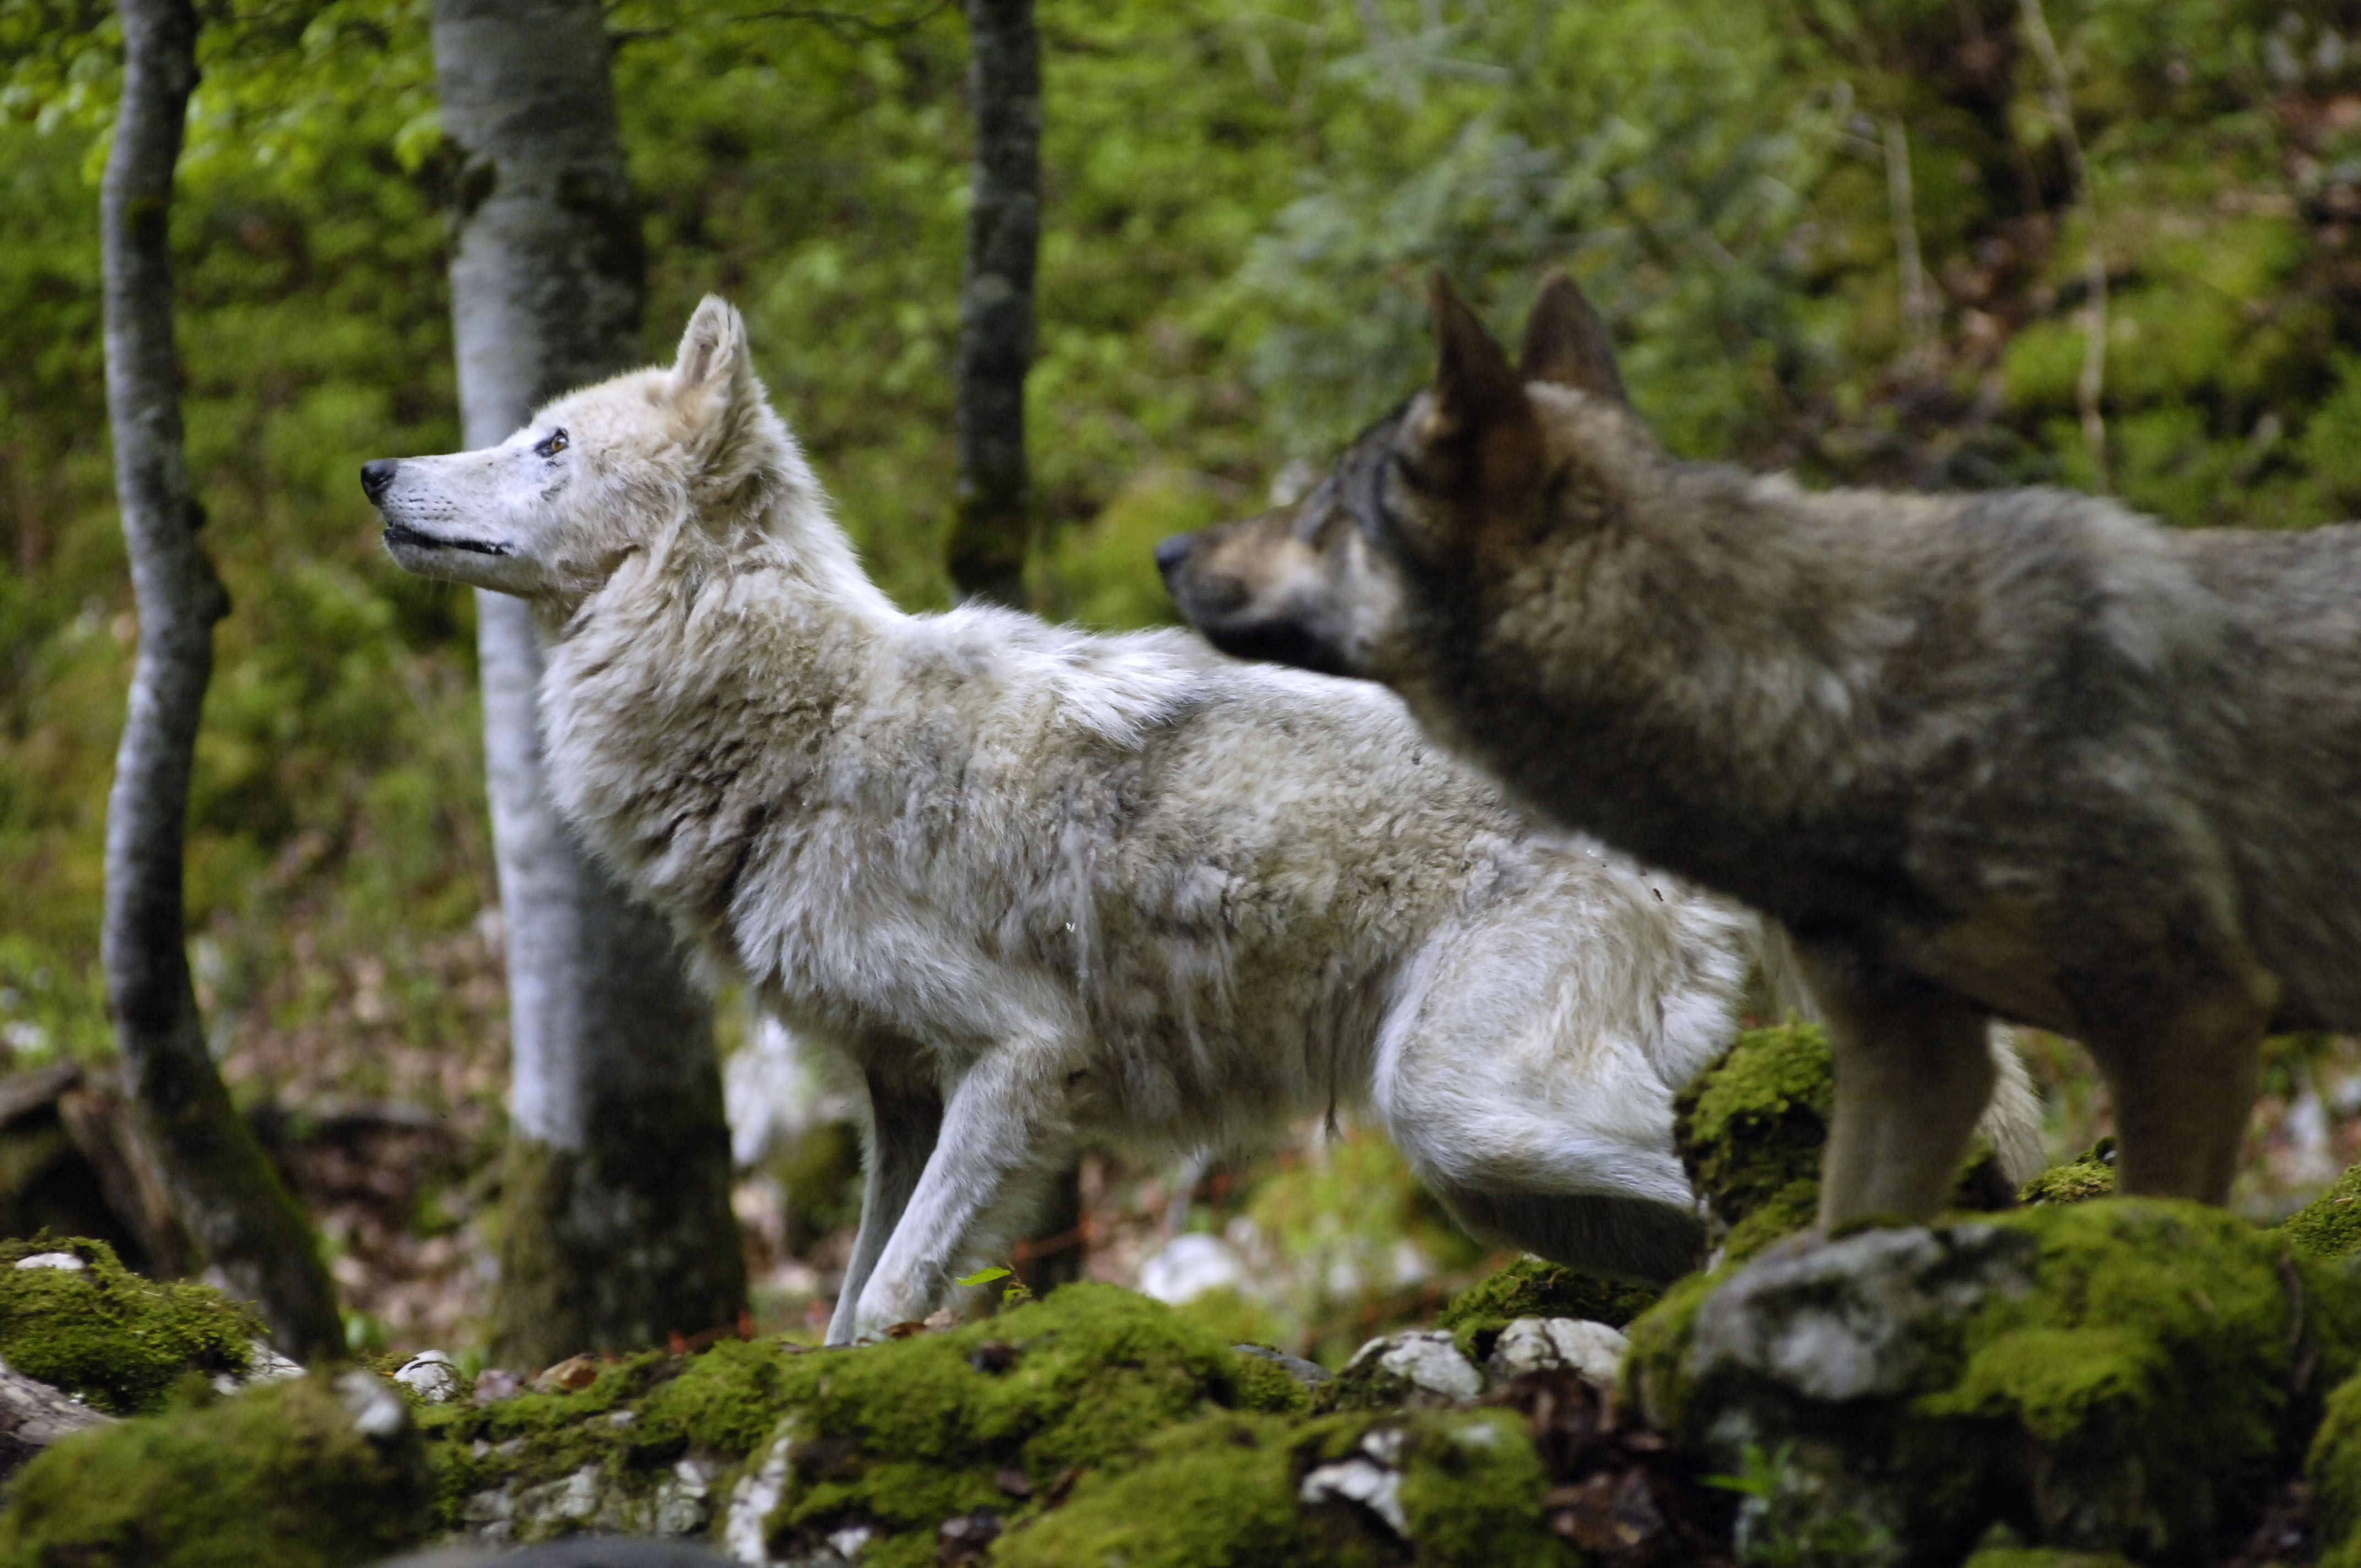 Скачать обои бесплатно Волки, Волк, Животные картинка на рабочий стол ПК